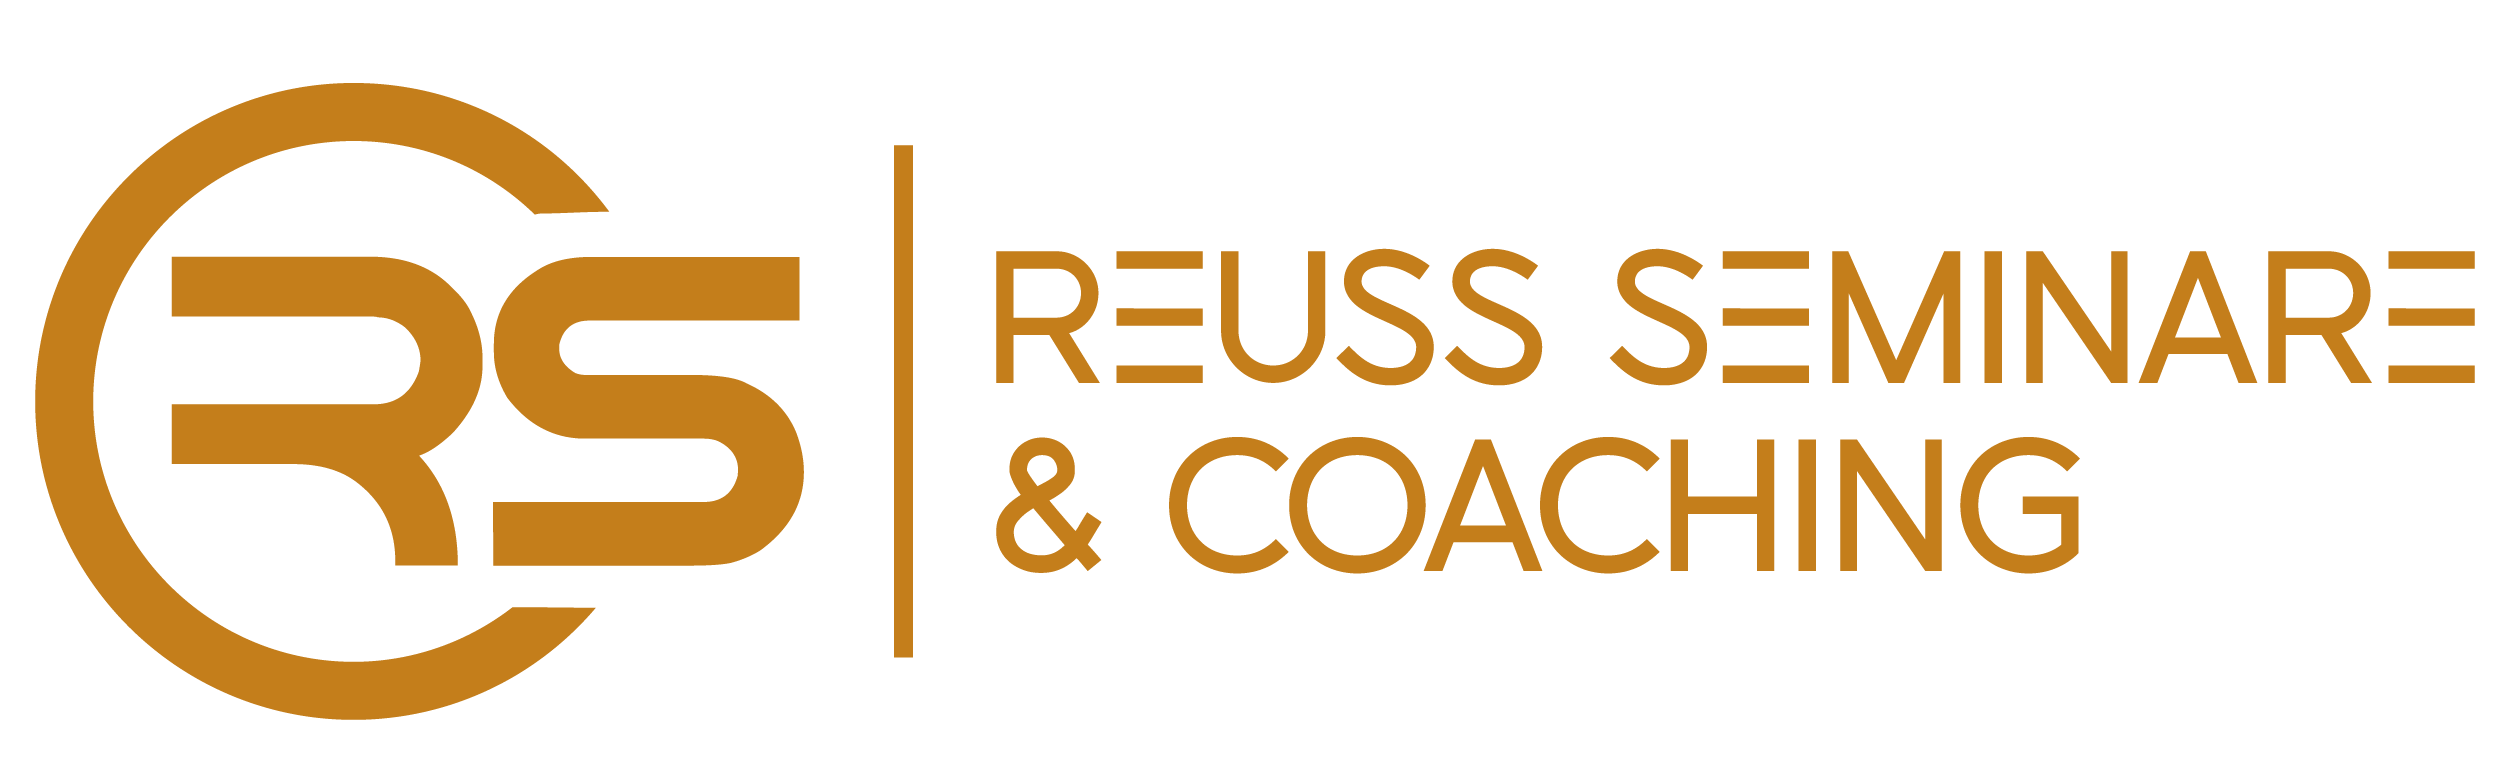 Reuß Seminare & Coaching